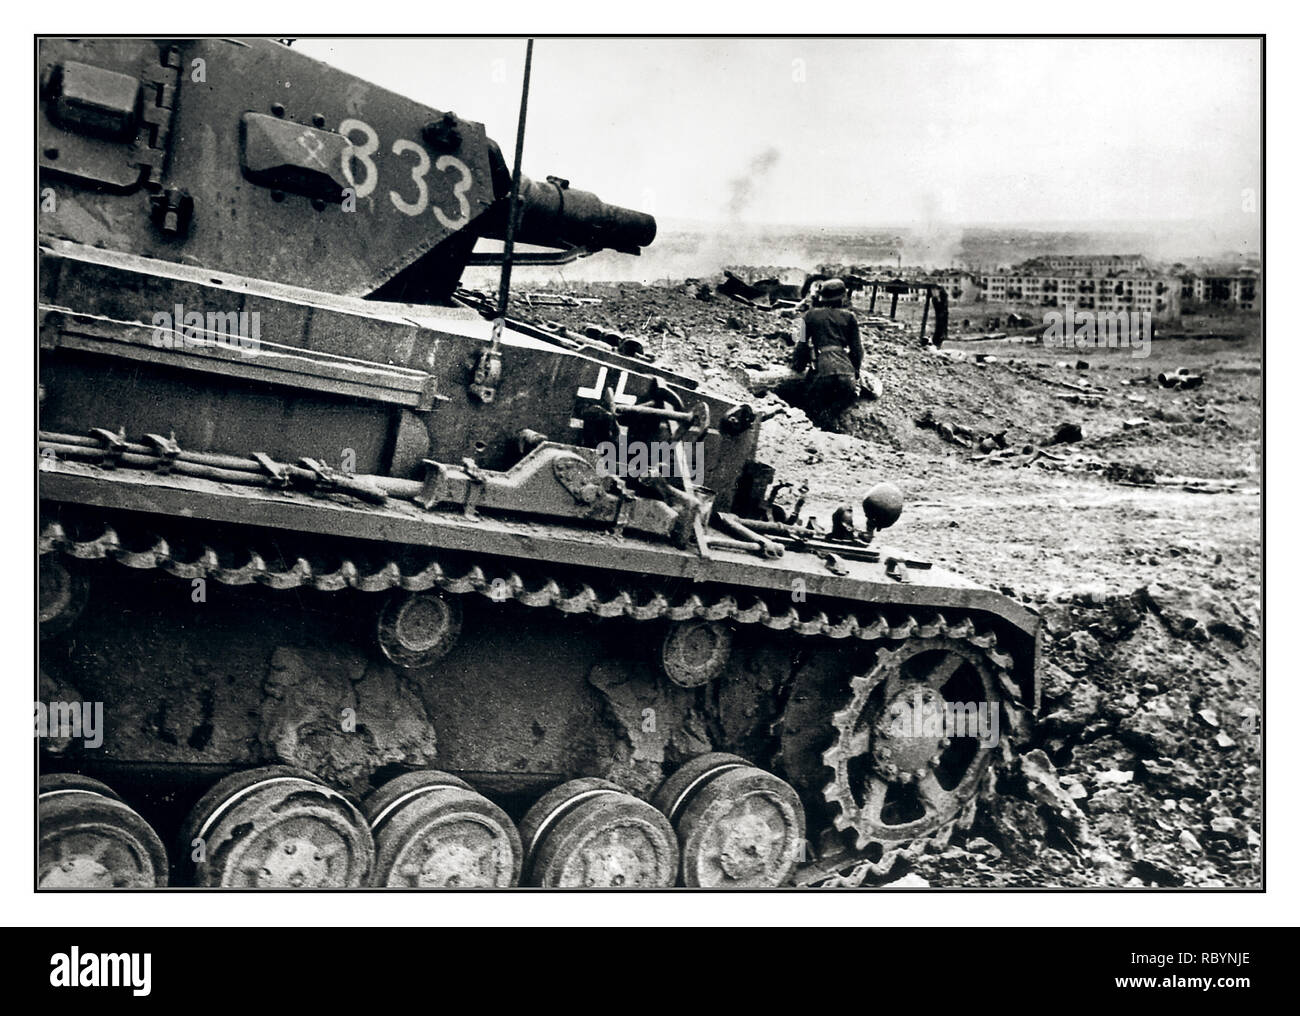 Bataille de Stalingrad char moyen allemand Panzer Pz.Kpfw. IV avec le numéro "833" de la 14e Panzer Division de la Wehrmacht sur les positions allemandes à la bataille de Stalingrad. Stalingrad, URSS Octobre 1942 Banque D'Images